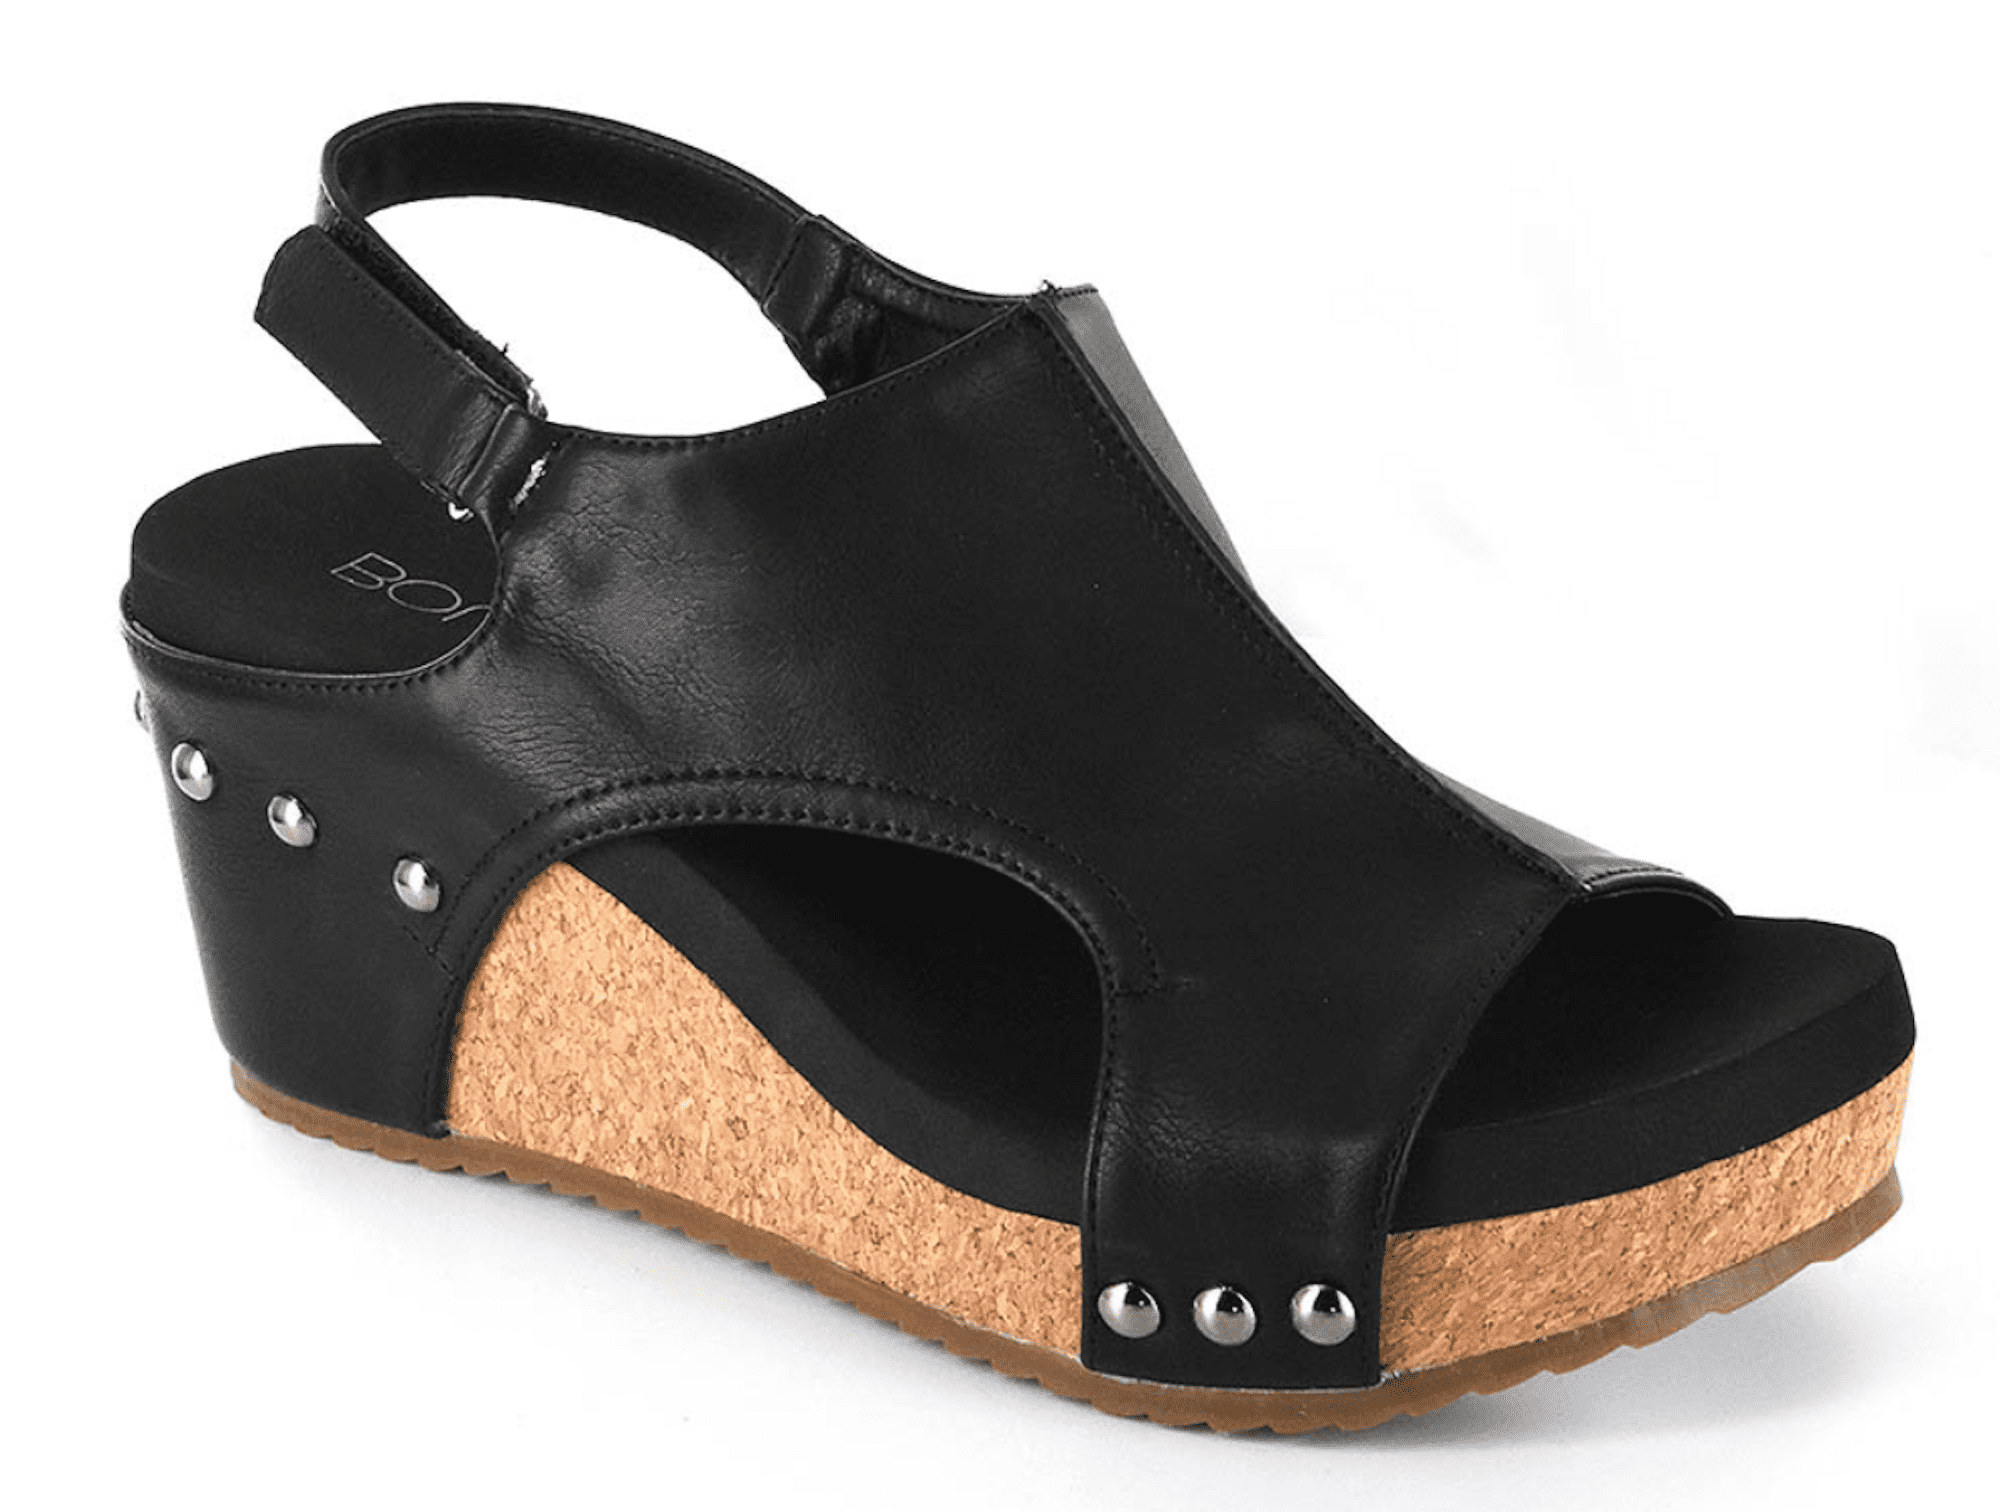 Corkys Footwear - Corkys Carley Black Wedge Sandals - Walmart.com ...